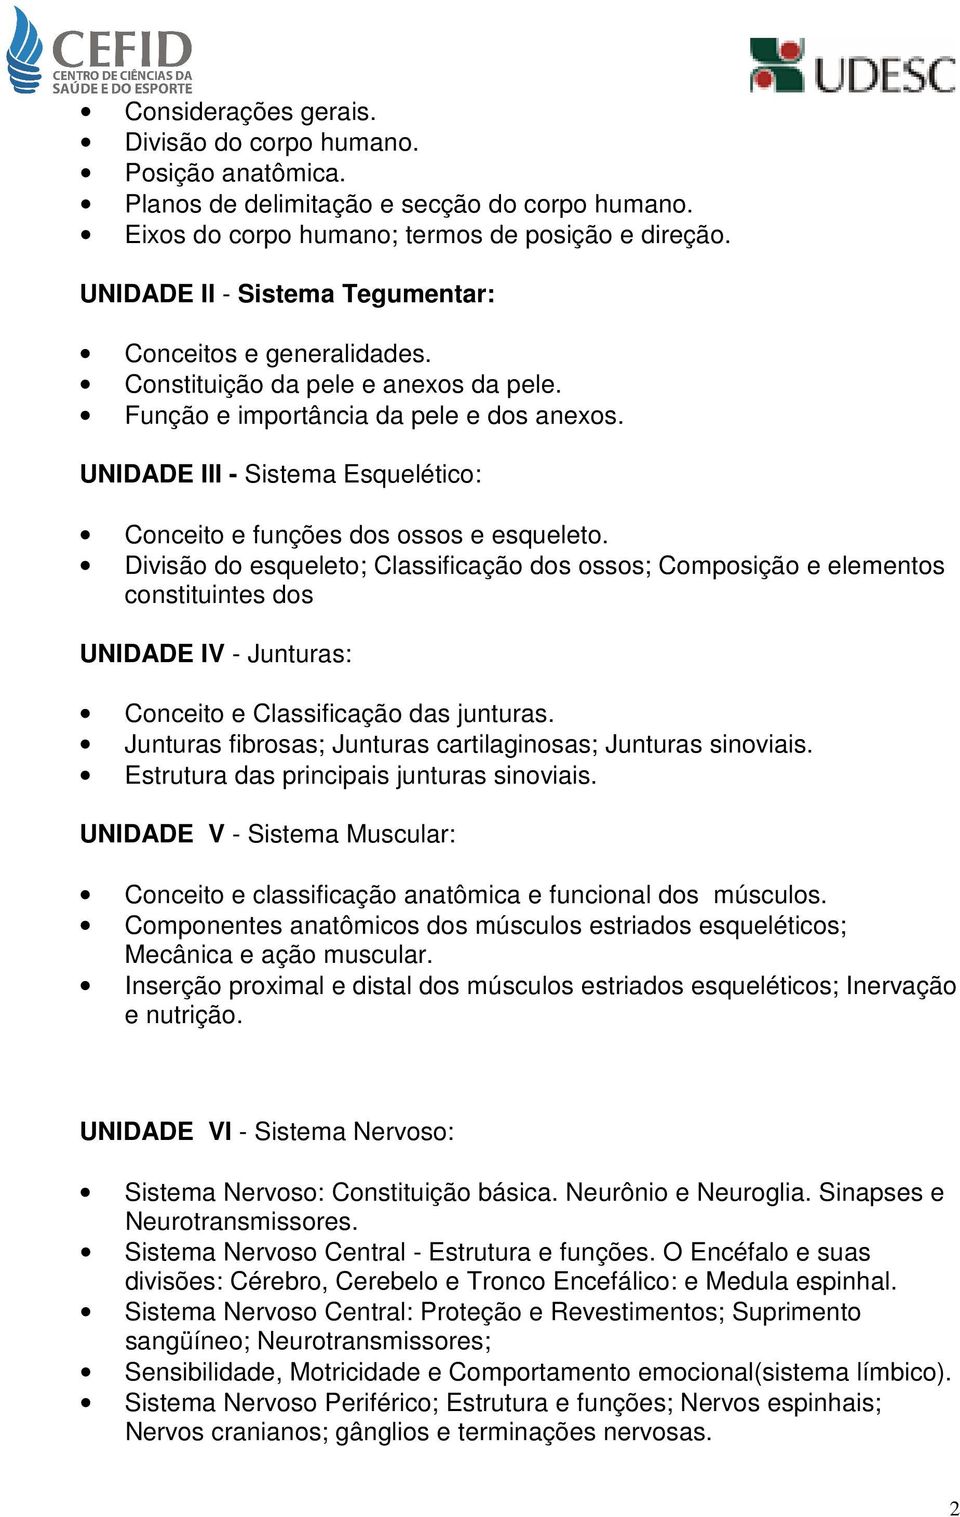 UNIDADE III - Sistema Esquelético: Conceito e funções dos ossos e esqueleto.